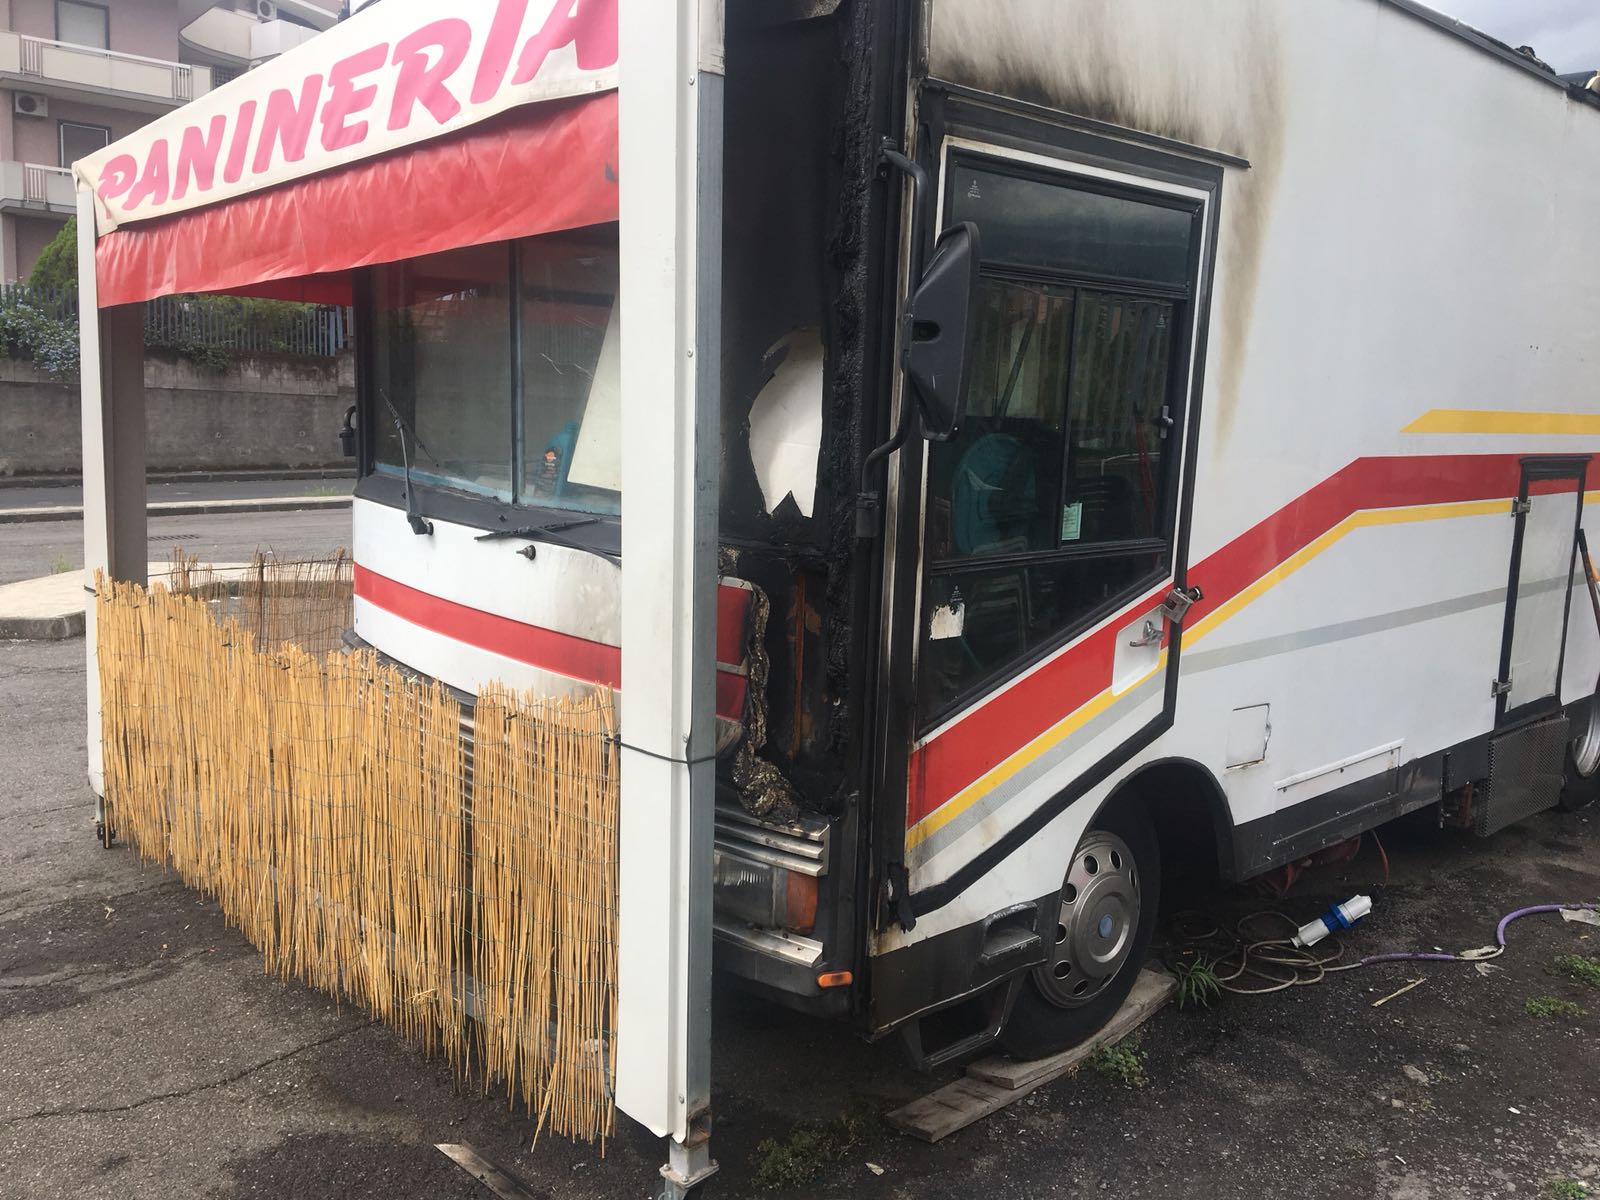 Riposto, a fuoco cabina camion panini in via Calabretta